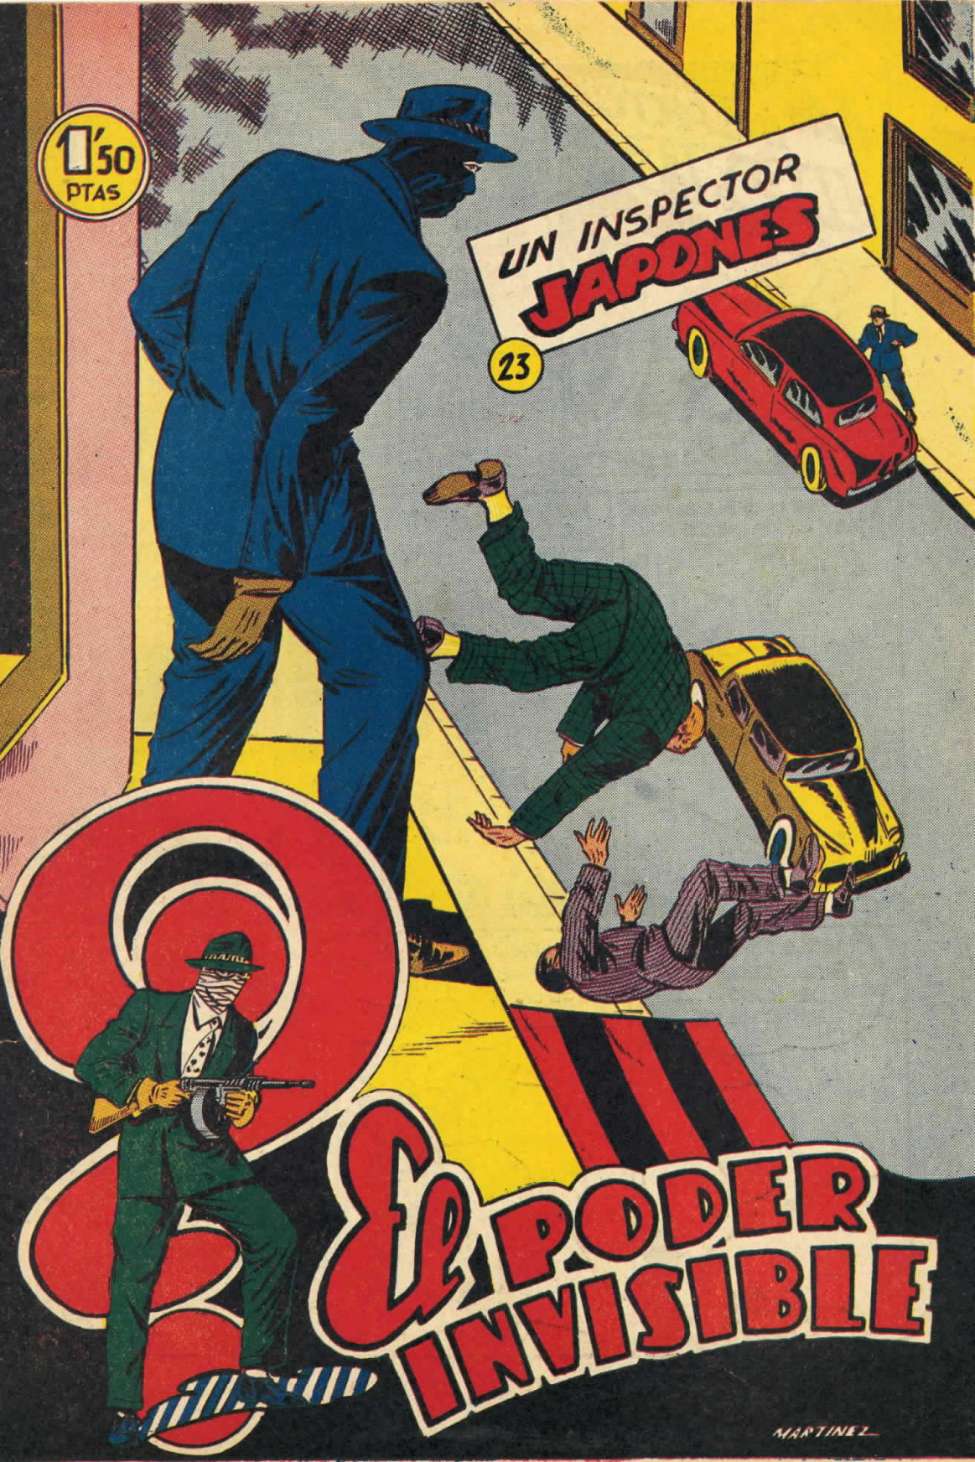 Comic Book Cover For El Poder Invisible 23 - Un inspector japonés